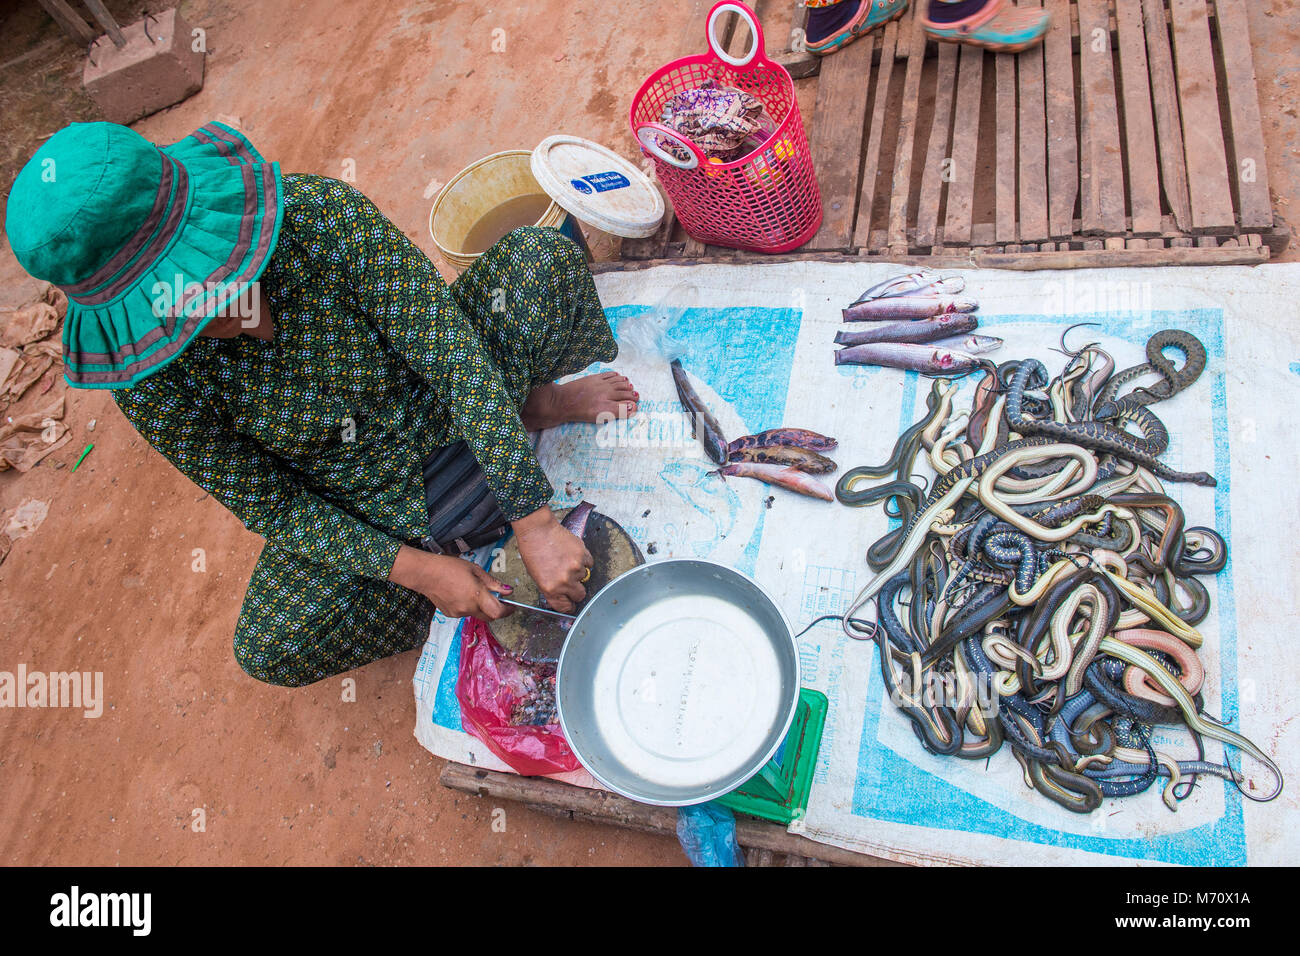 Femme cambodgienne la vente de serpents dans un marché à Siem Reap au Cambodge Banque D'Images